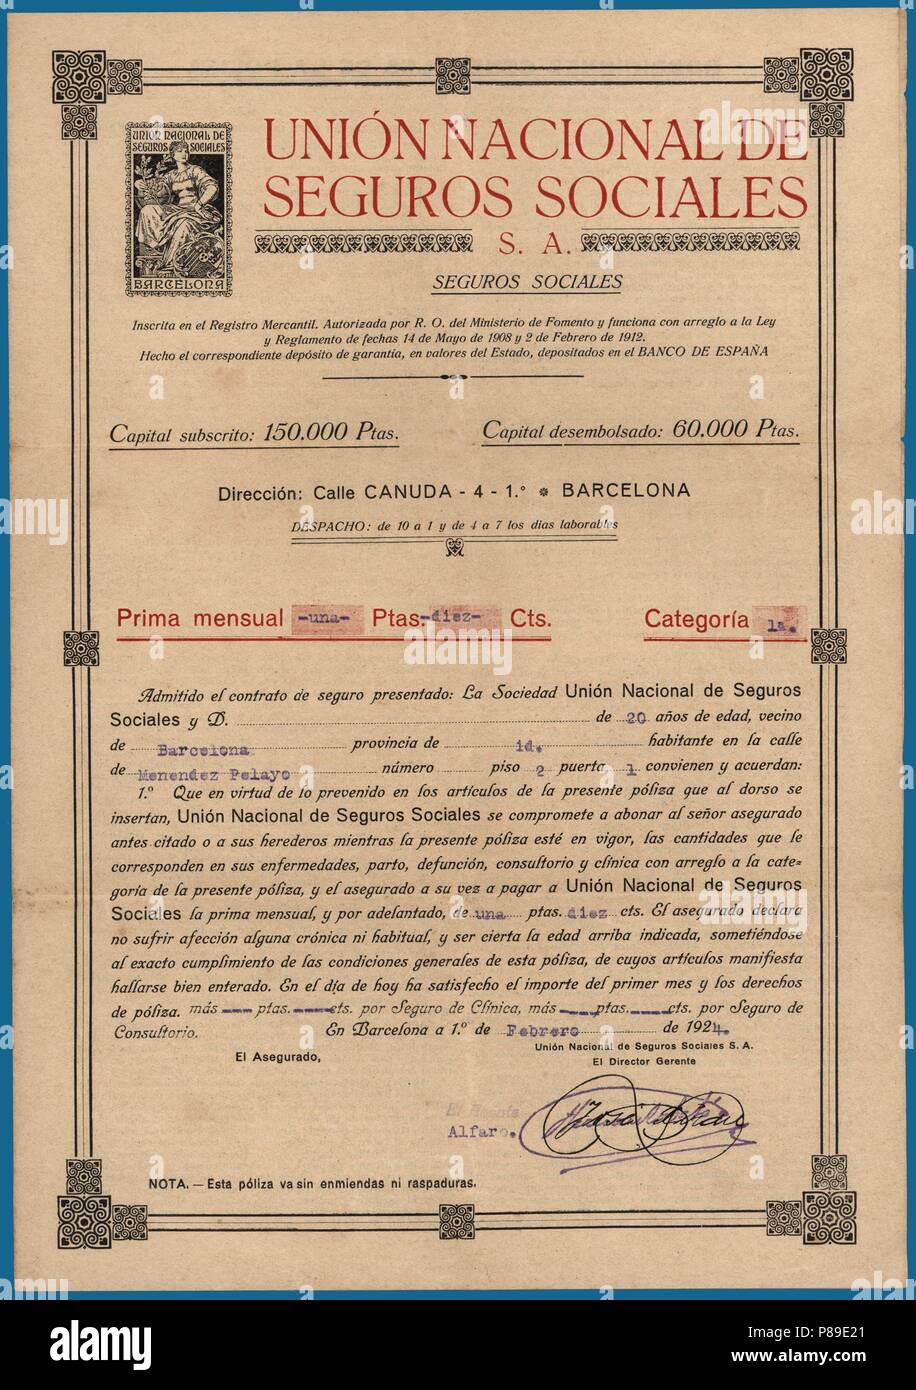 Póliza de seguro de enfermedad. Contrato de la Unión Nacional de Seguros Sociales S.A. Barcellona, año 1924. Foto Stock